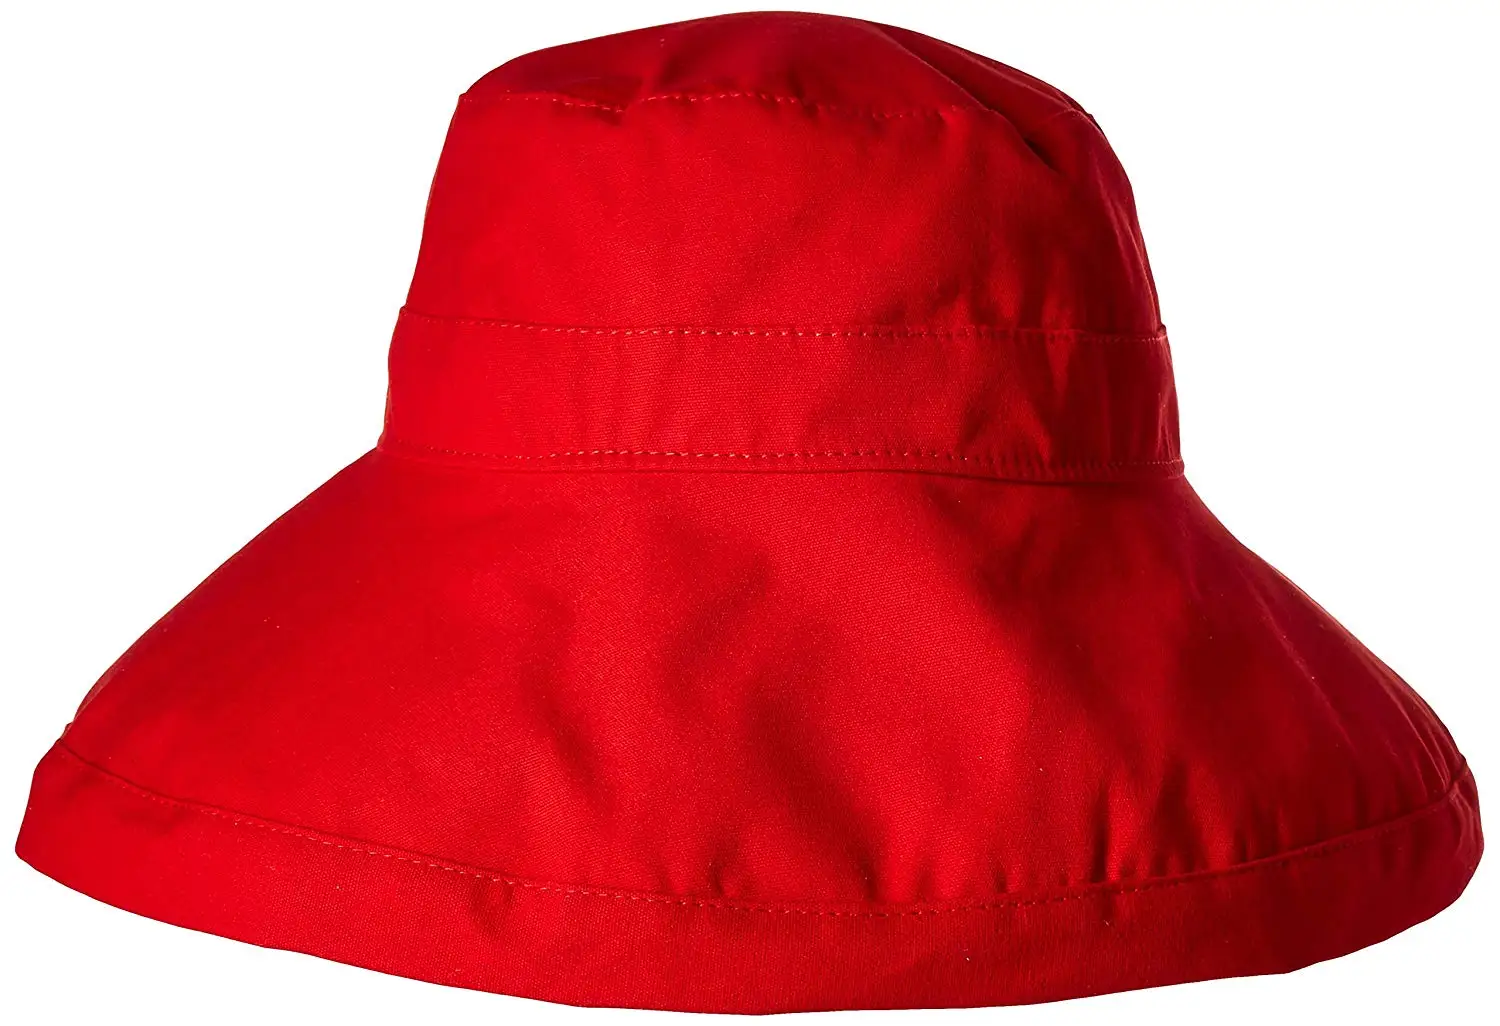 Connectyle Womens Summer Wide Brim Cotton Bucket Sun Hat with Inner ...